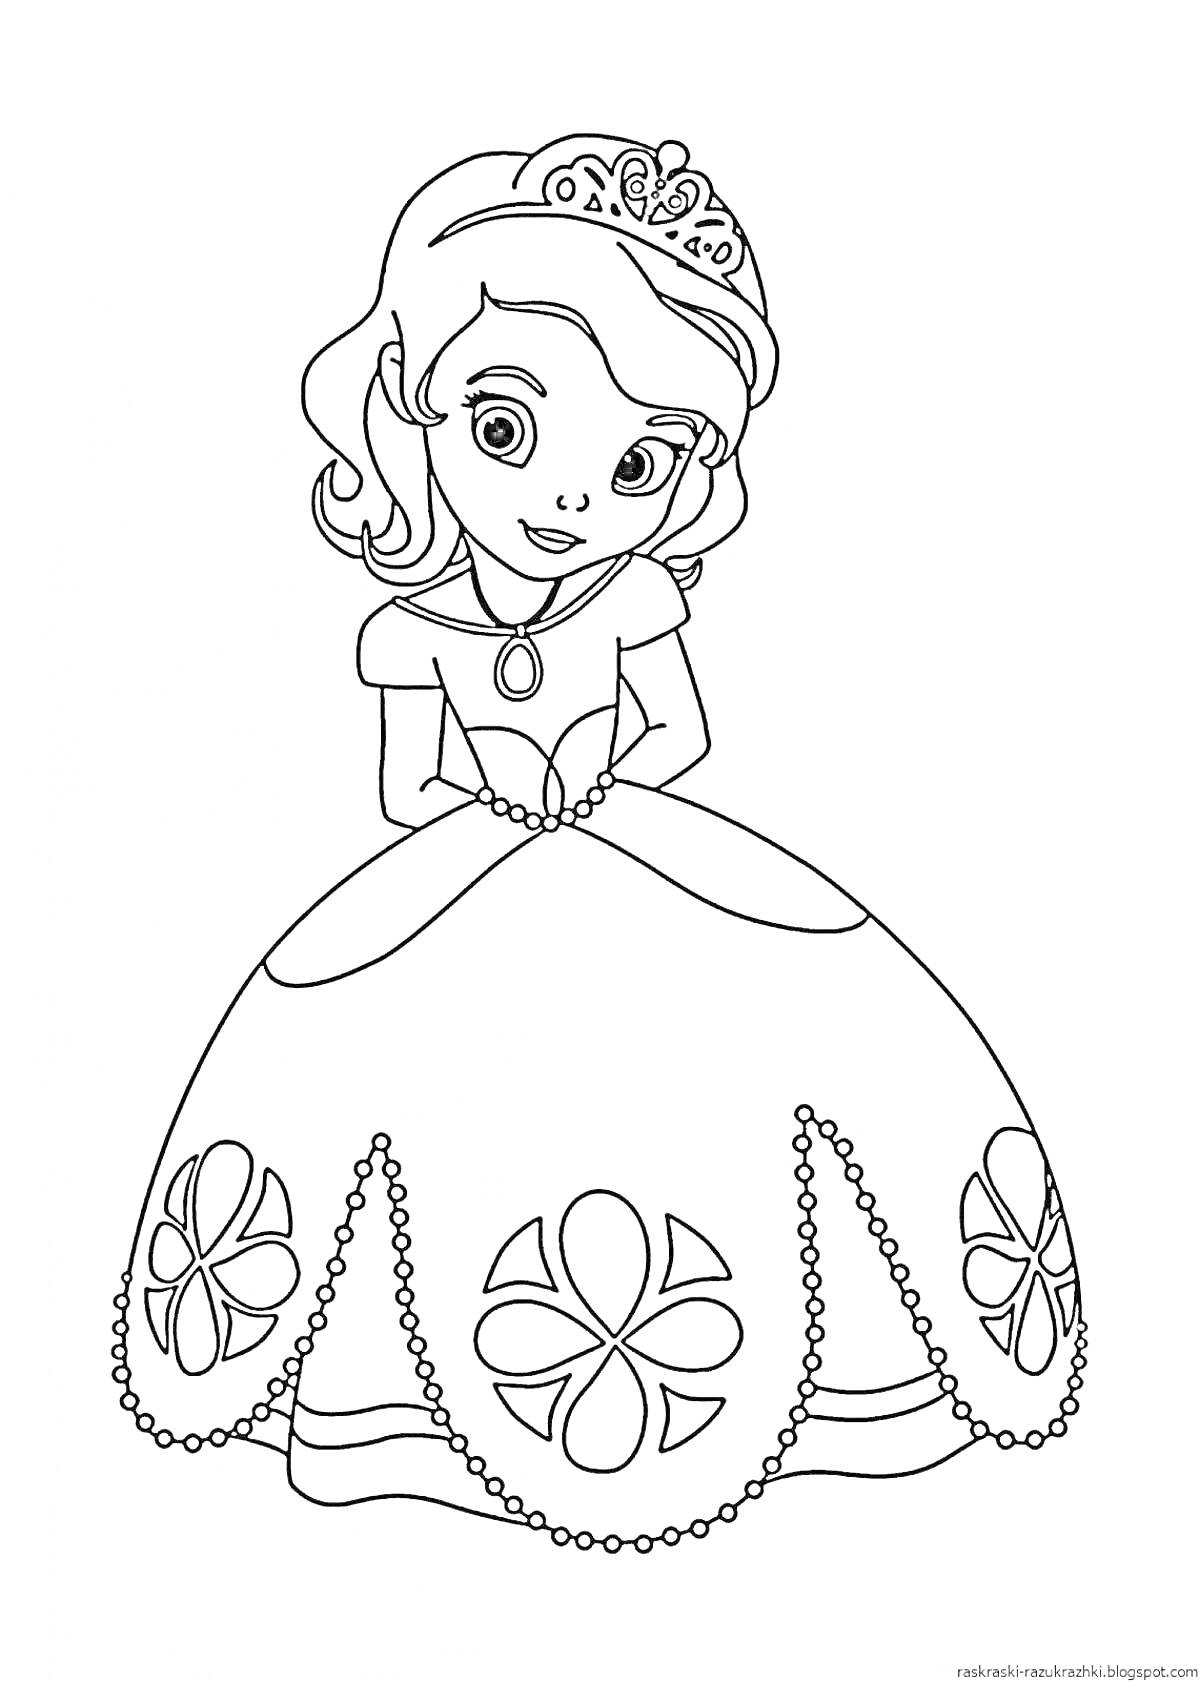 Раскраска Принцесса в короне с цветами на платье